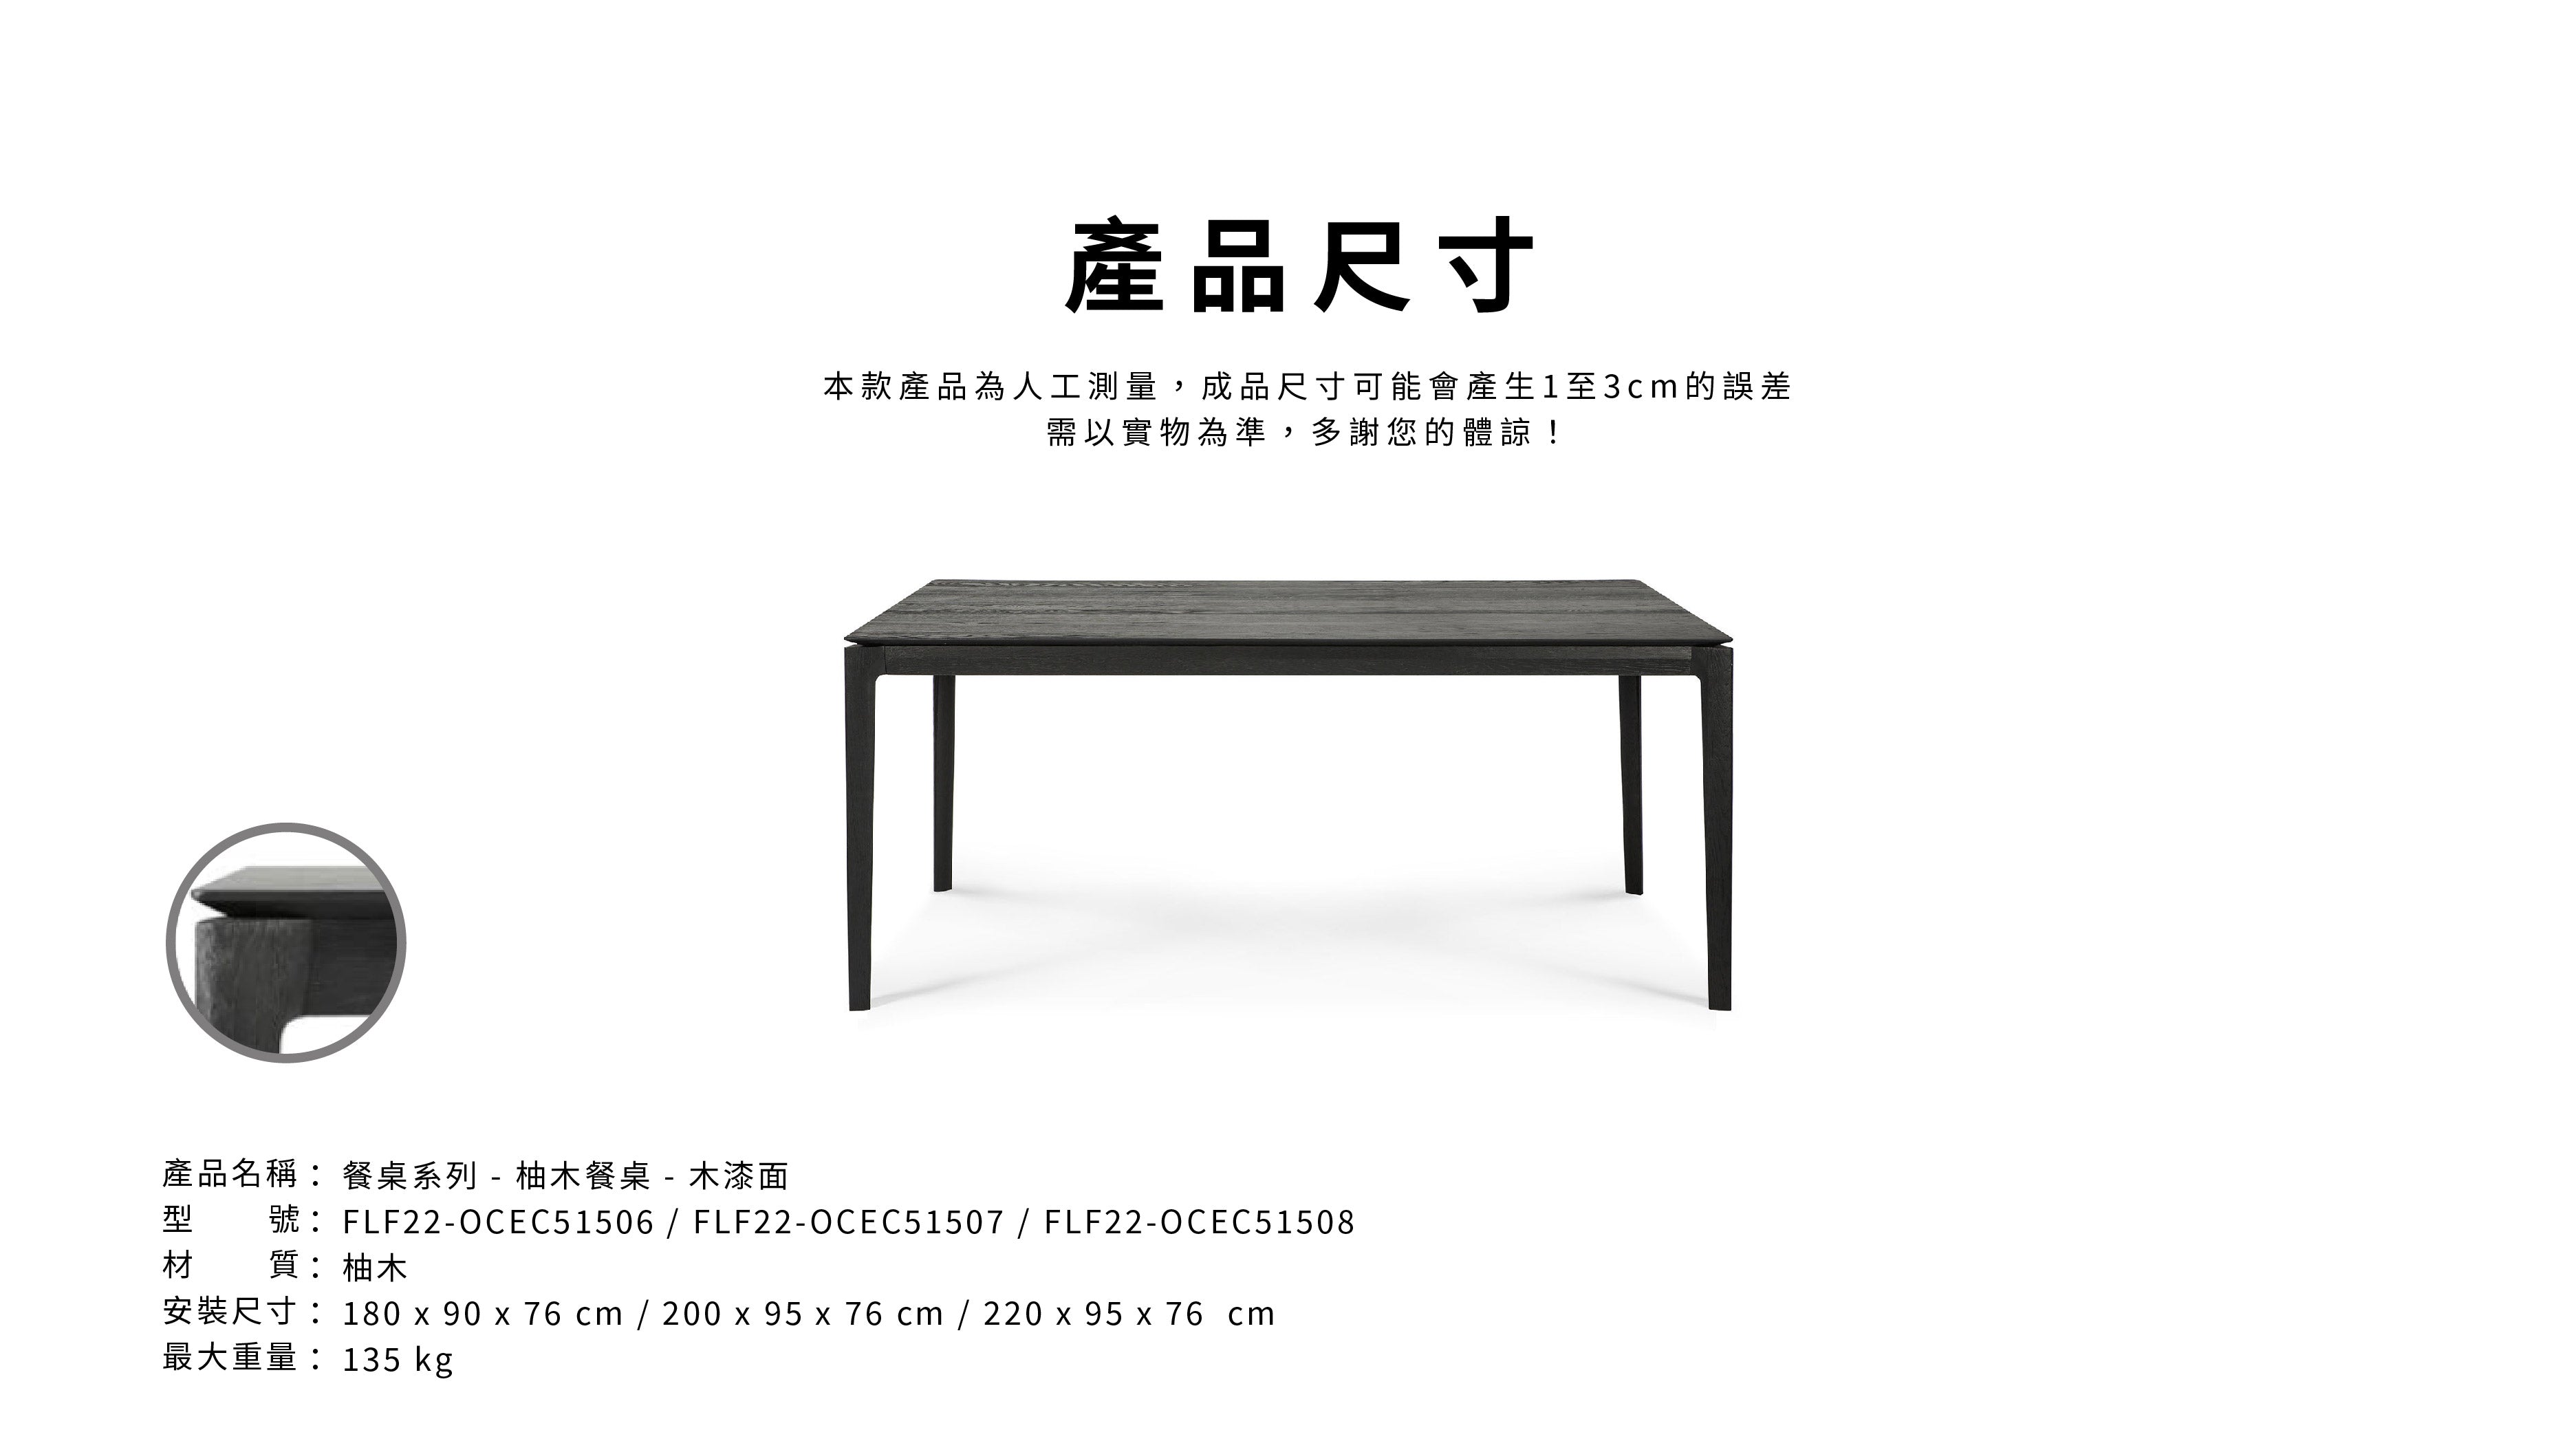 比利時原裝進口實木傢俬 - 餐桌系列 - Arc系列黑色橡木餐桌